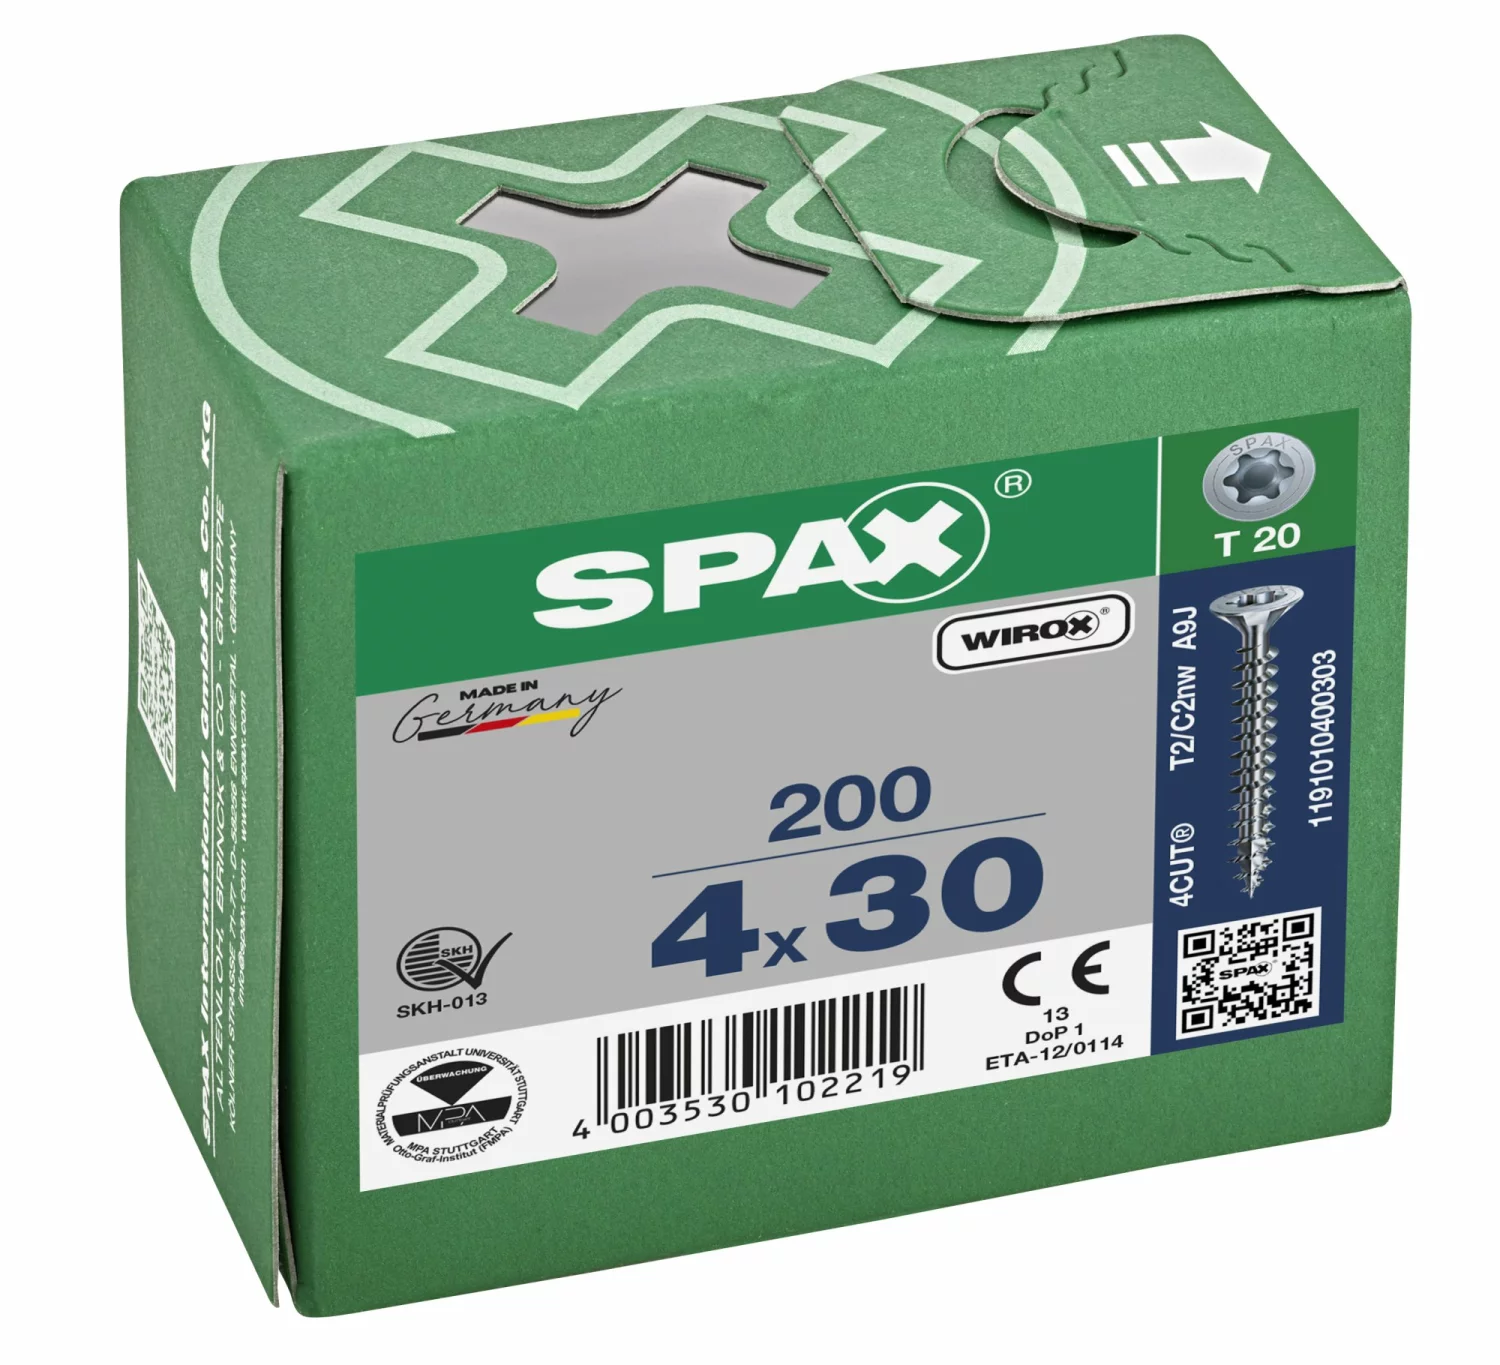 SPAX 1191010400303 - Vis universelle, 4 x 30 mm, 200 pièces, Tête centrante, Tête fraisée, T-STAR plus T20, 4CUT, WIROX